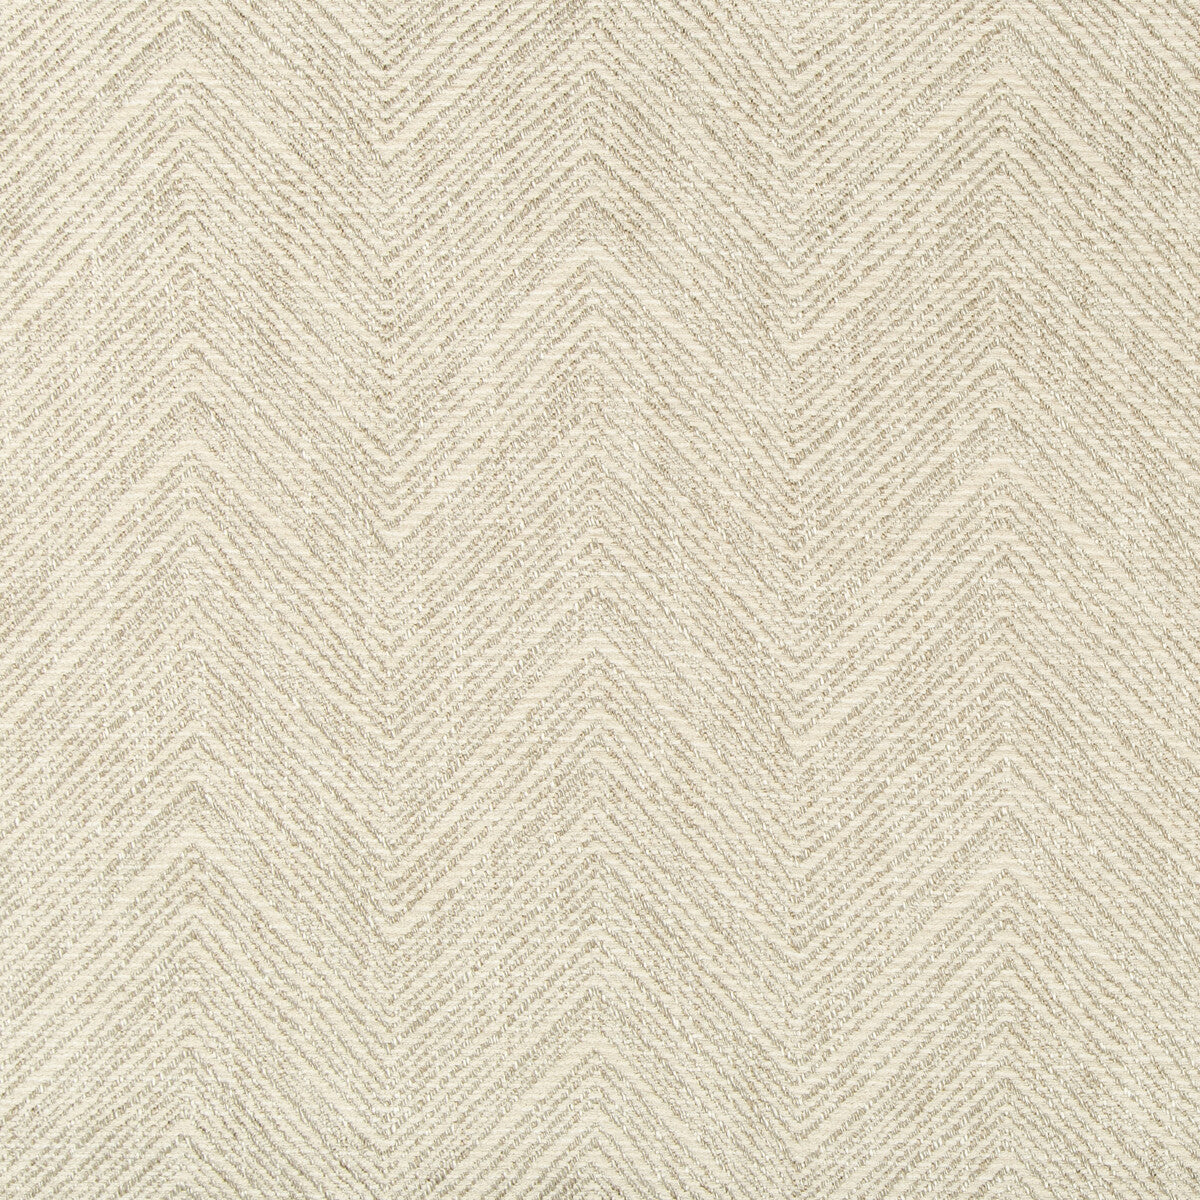 Kravet Design fabric in 35641-16 color - pattern 35641.16.0 - by Kravet Design